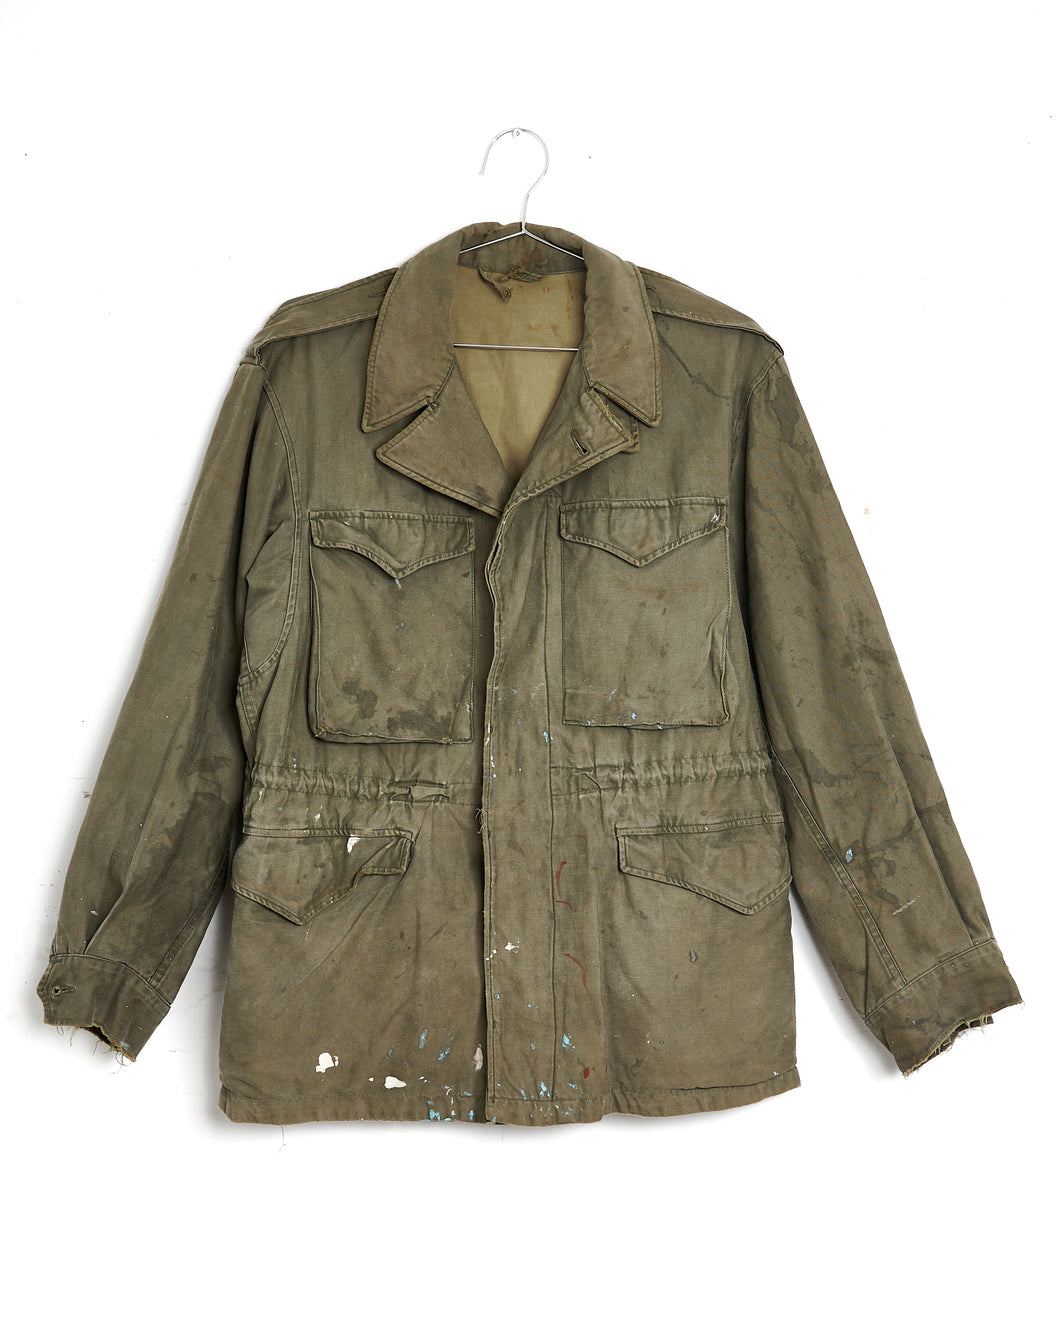 1940s M43 Field Jacket